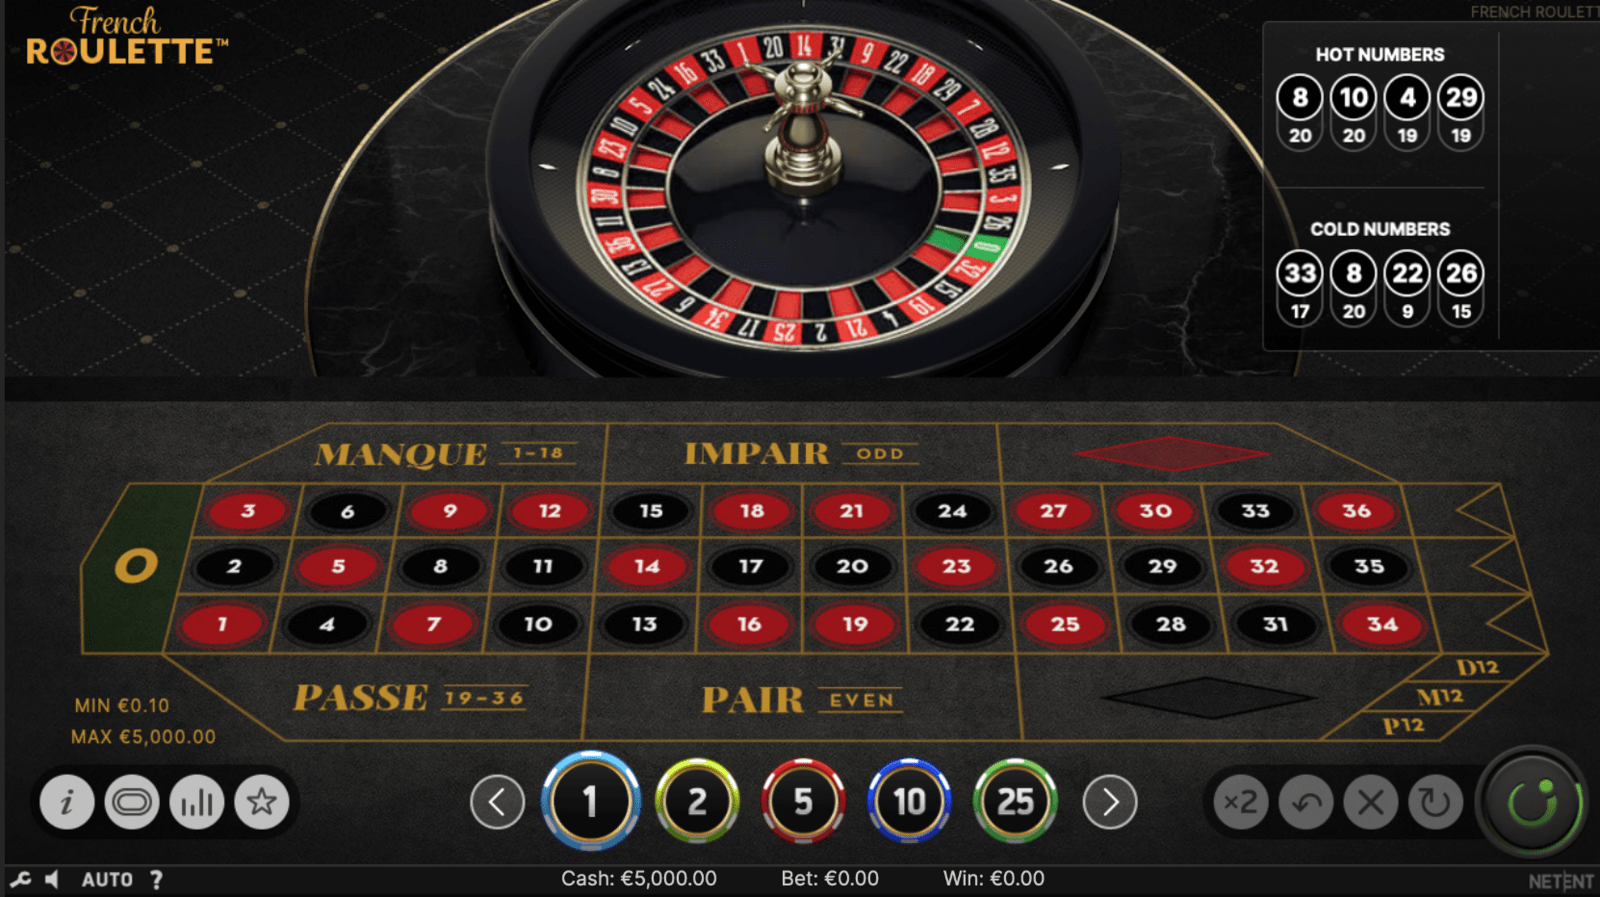 Jugar a French Roulette Pro Series de NetEnt en casinos se España